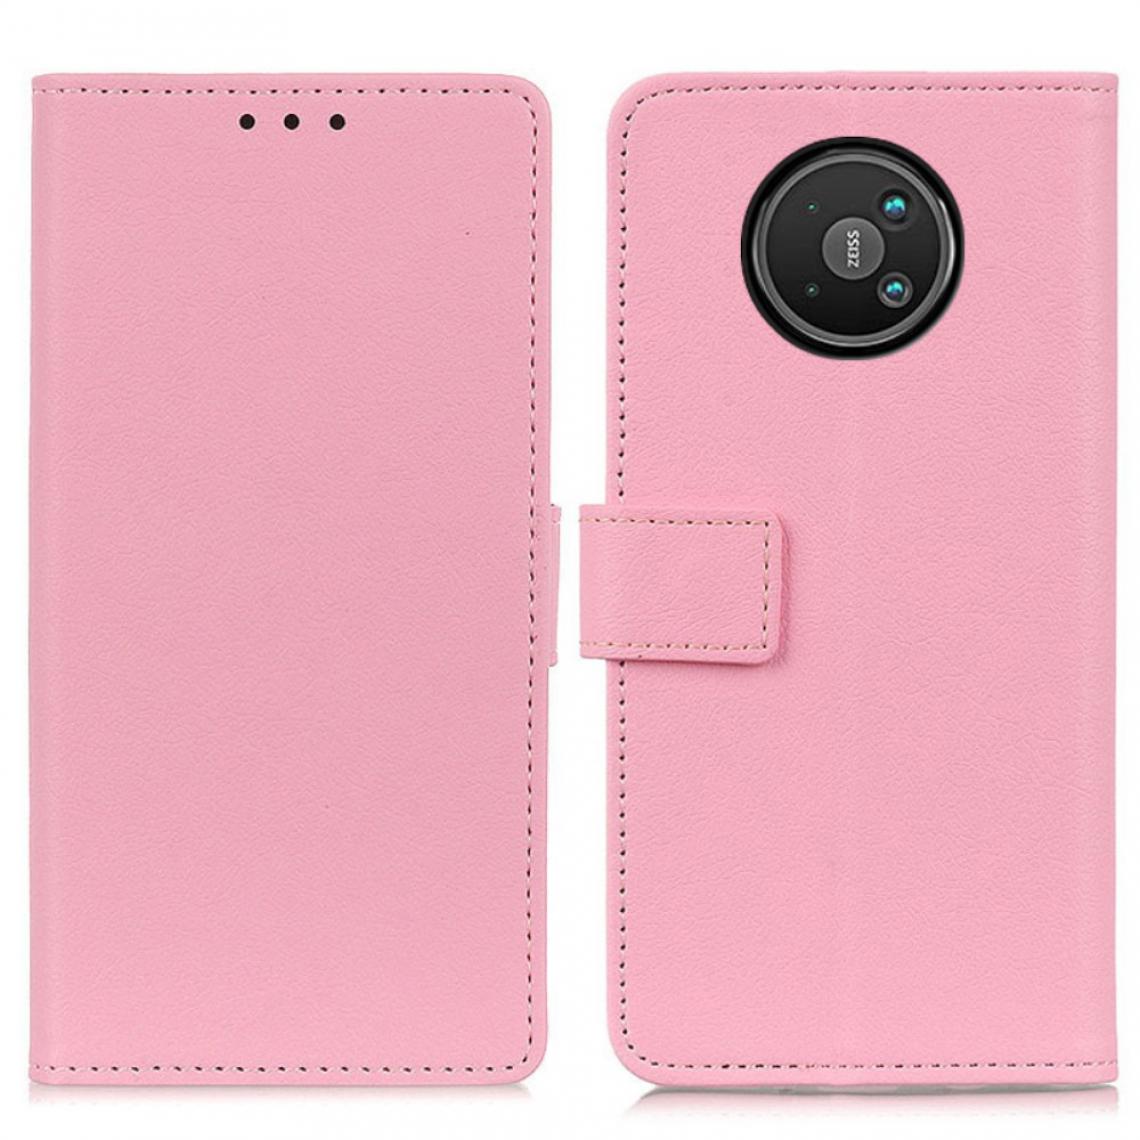 Other - Etui en PU avec support rose pour votre Nokia 8 V 5G UW - Coque, étui smartphone